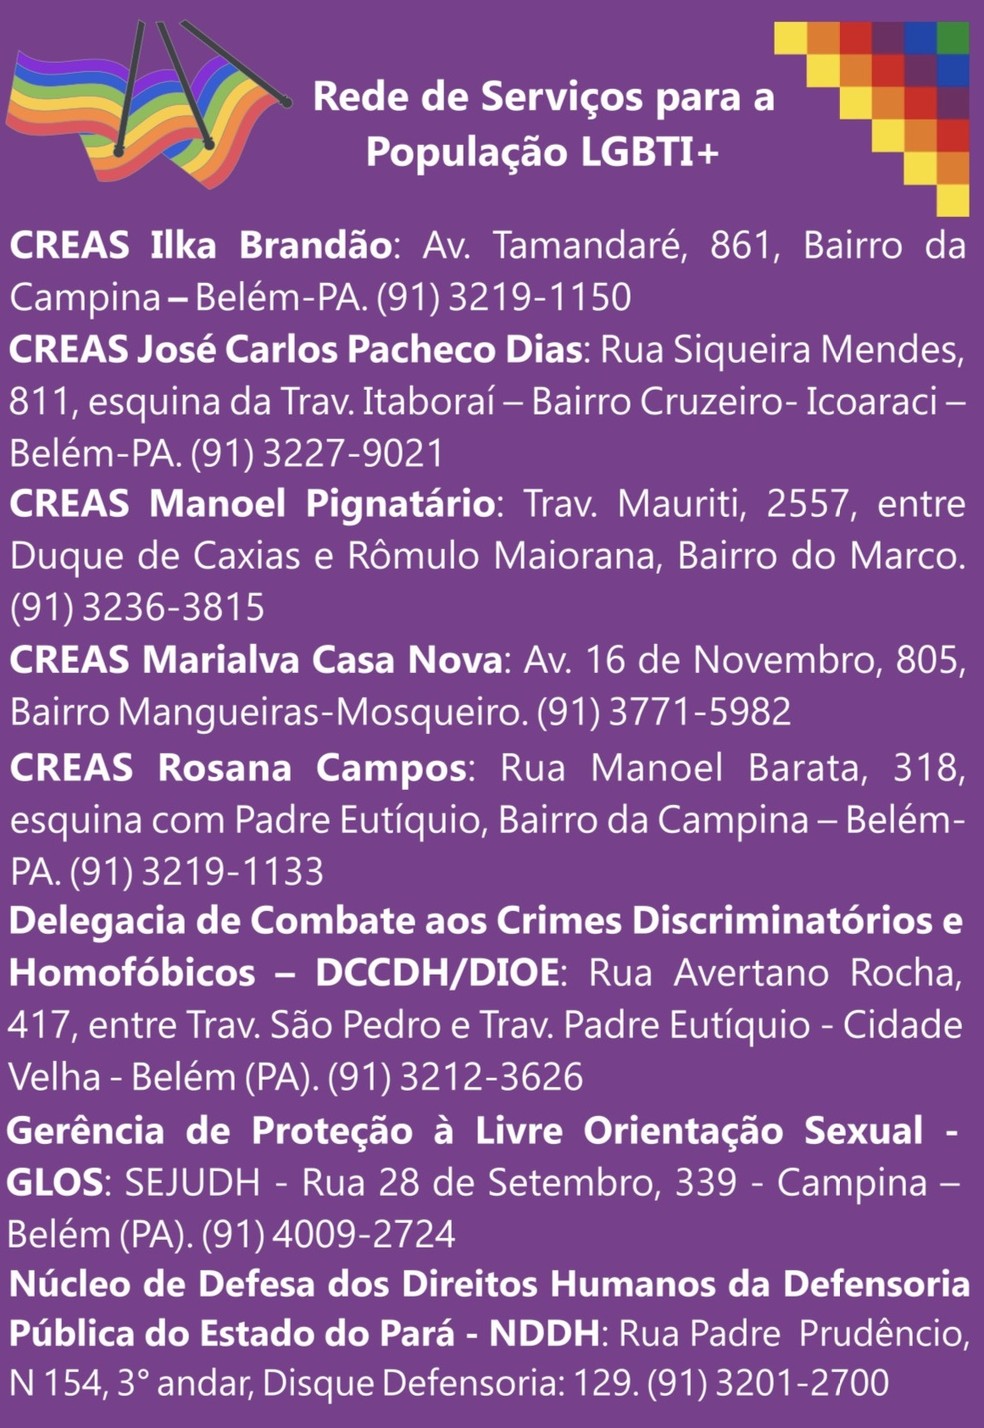 Comissão de Diversidade Sexual da OAB-PA lista endereços de rede de apoio a população LGBTI — Foto: Reprodução/OAB-PA